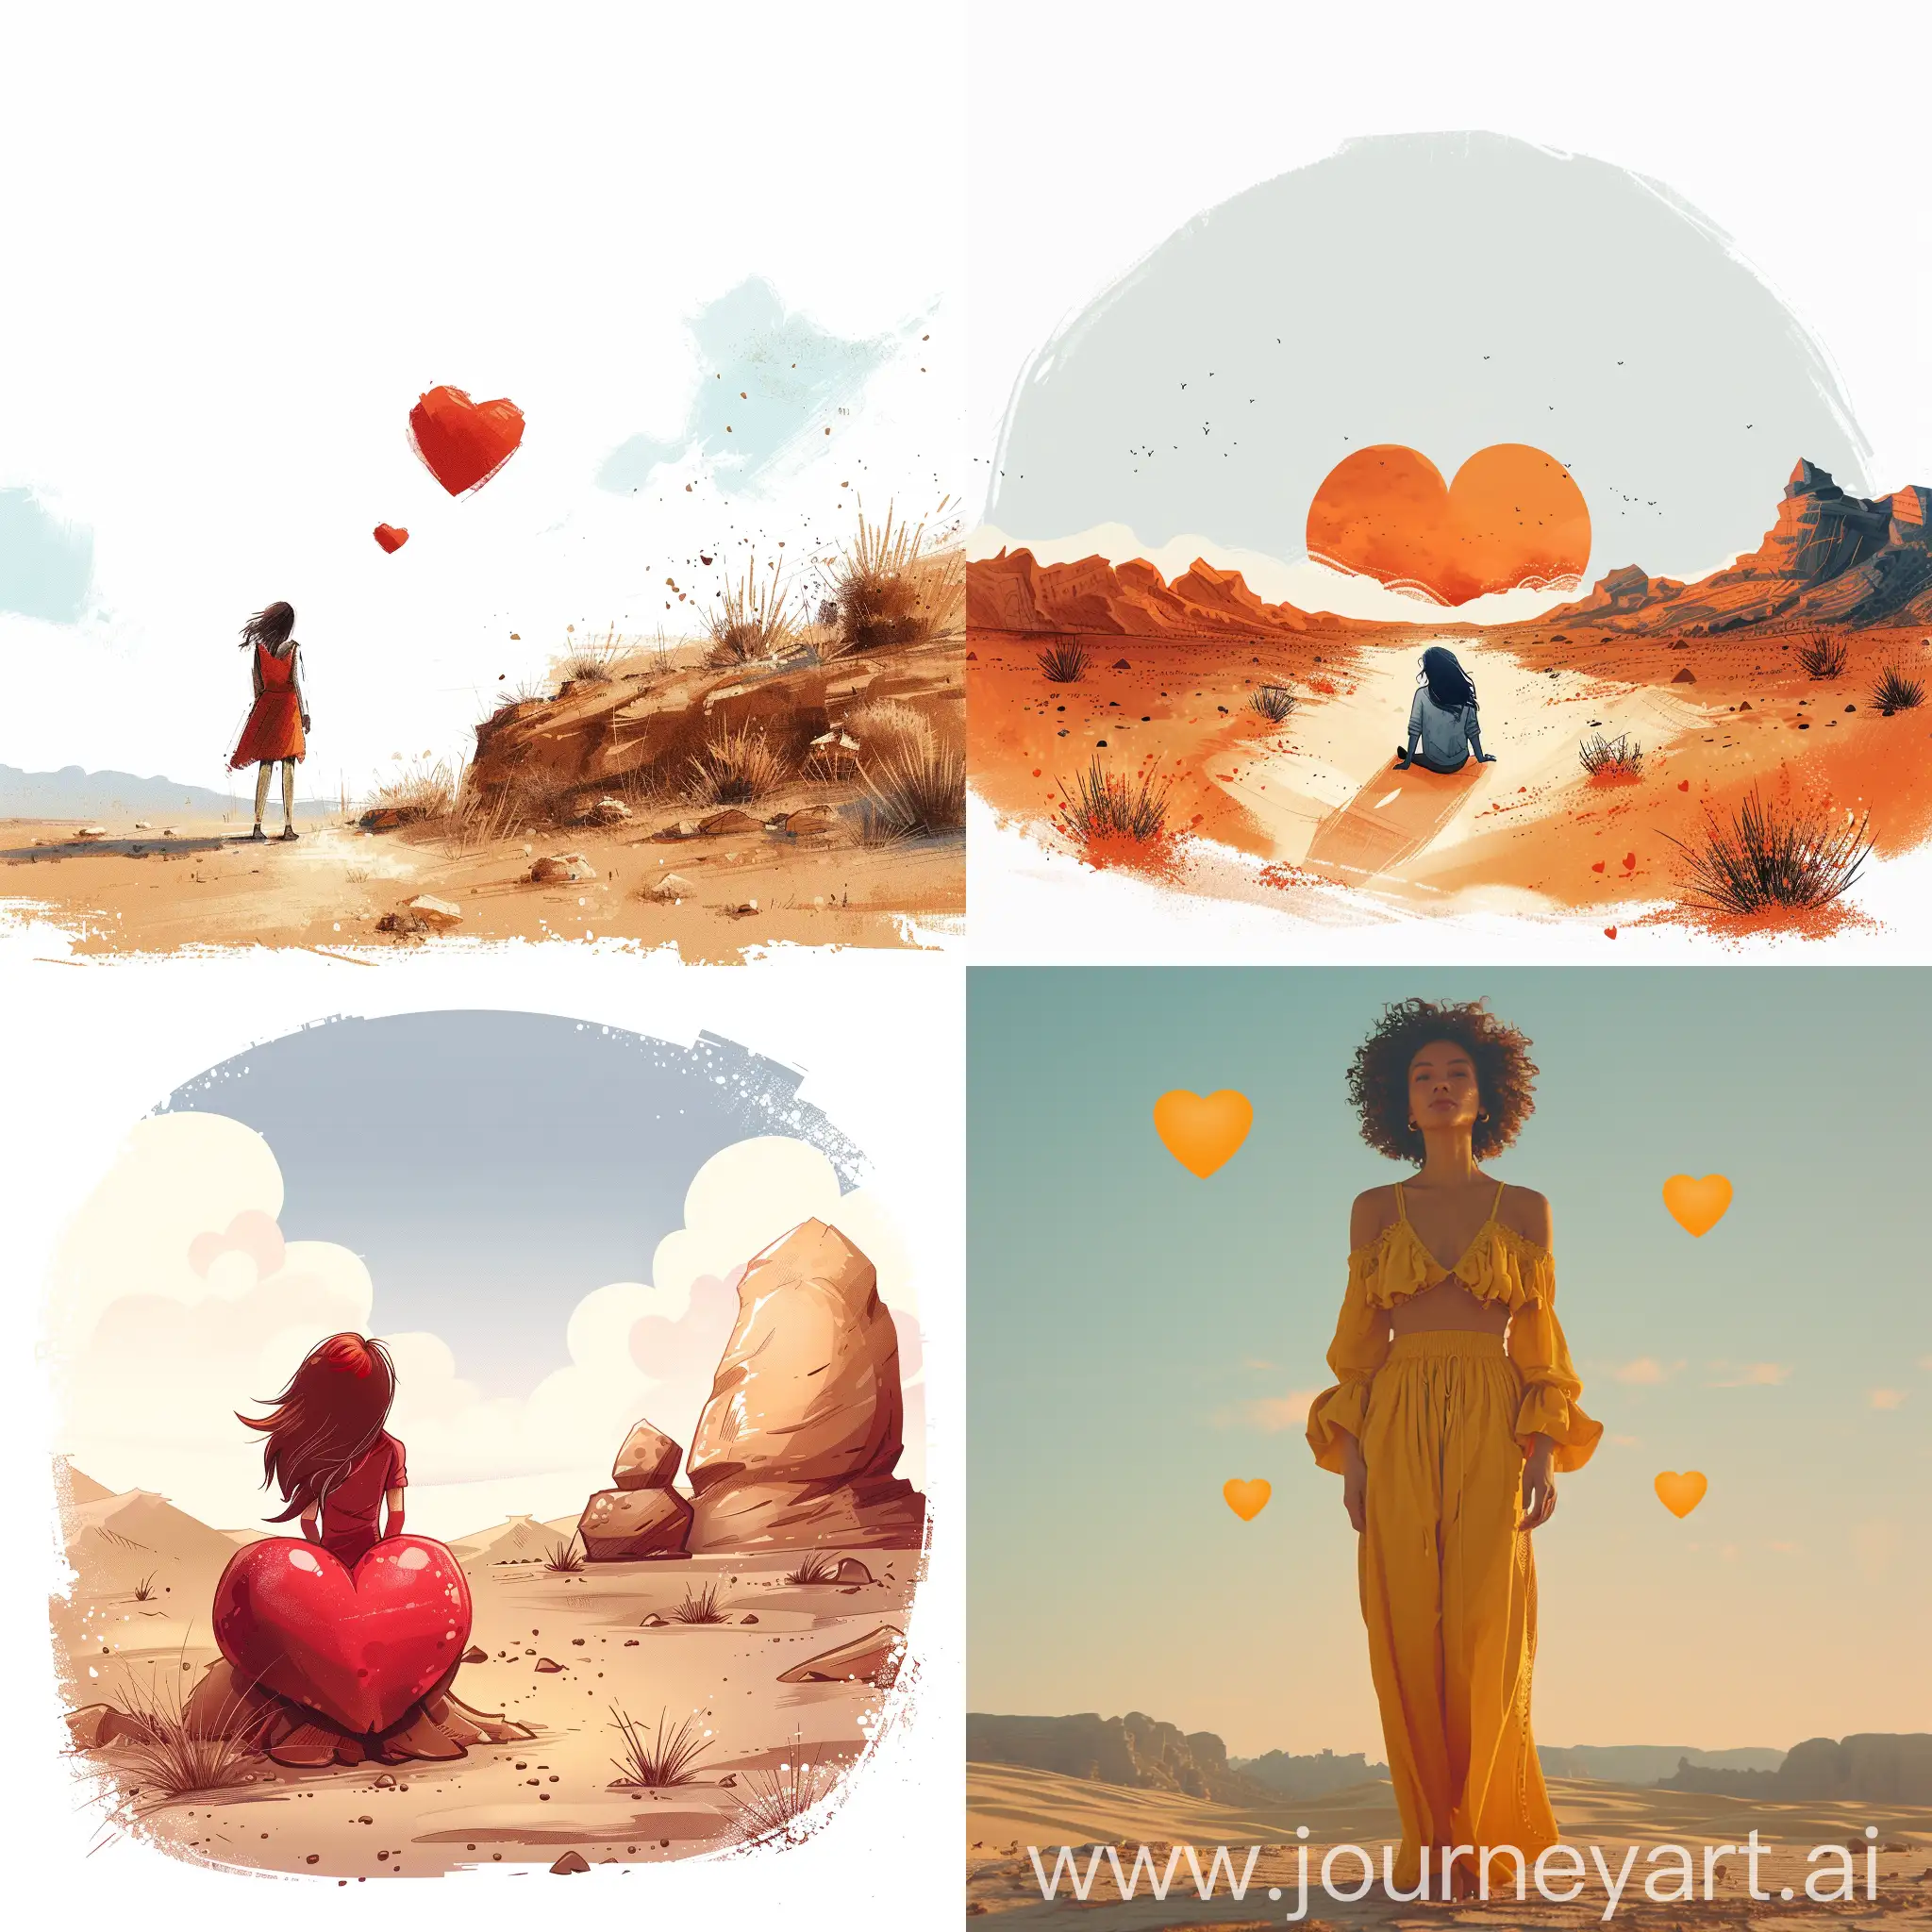 Heart-Symbol-in-Desert-Landscape-Animated-Illustration-on-White-Background